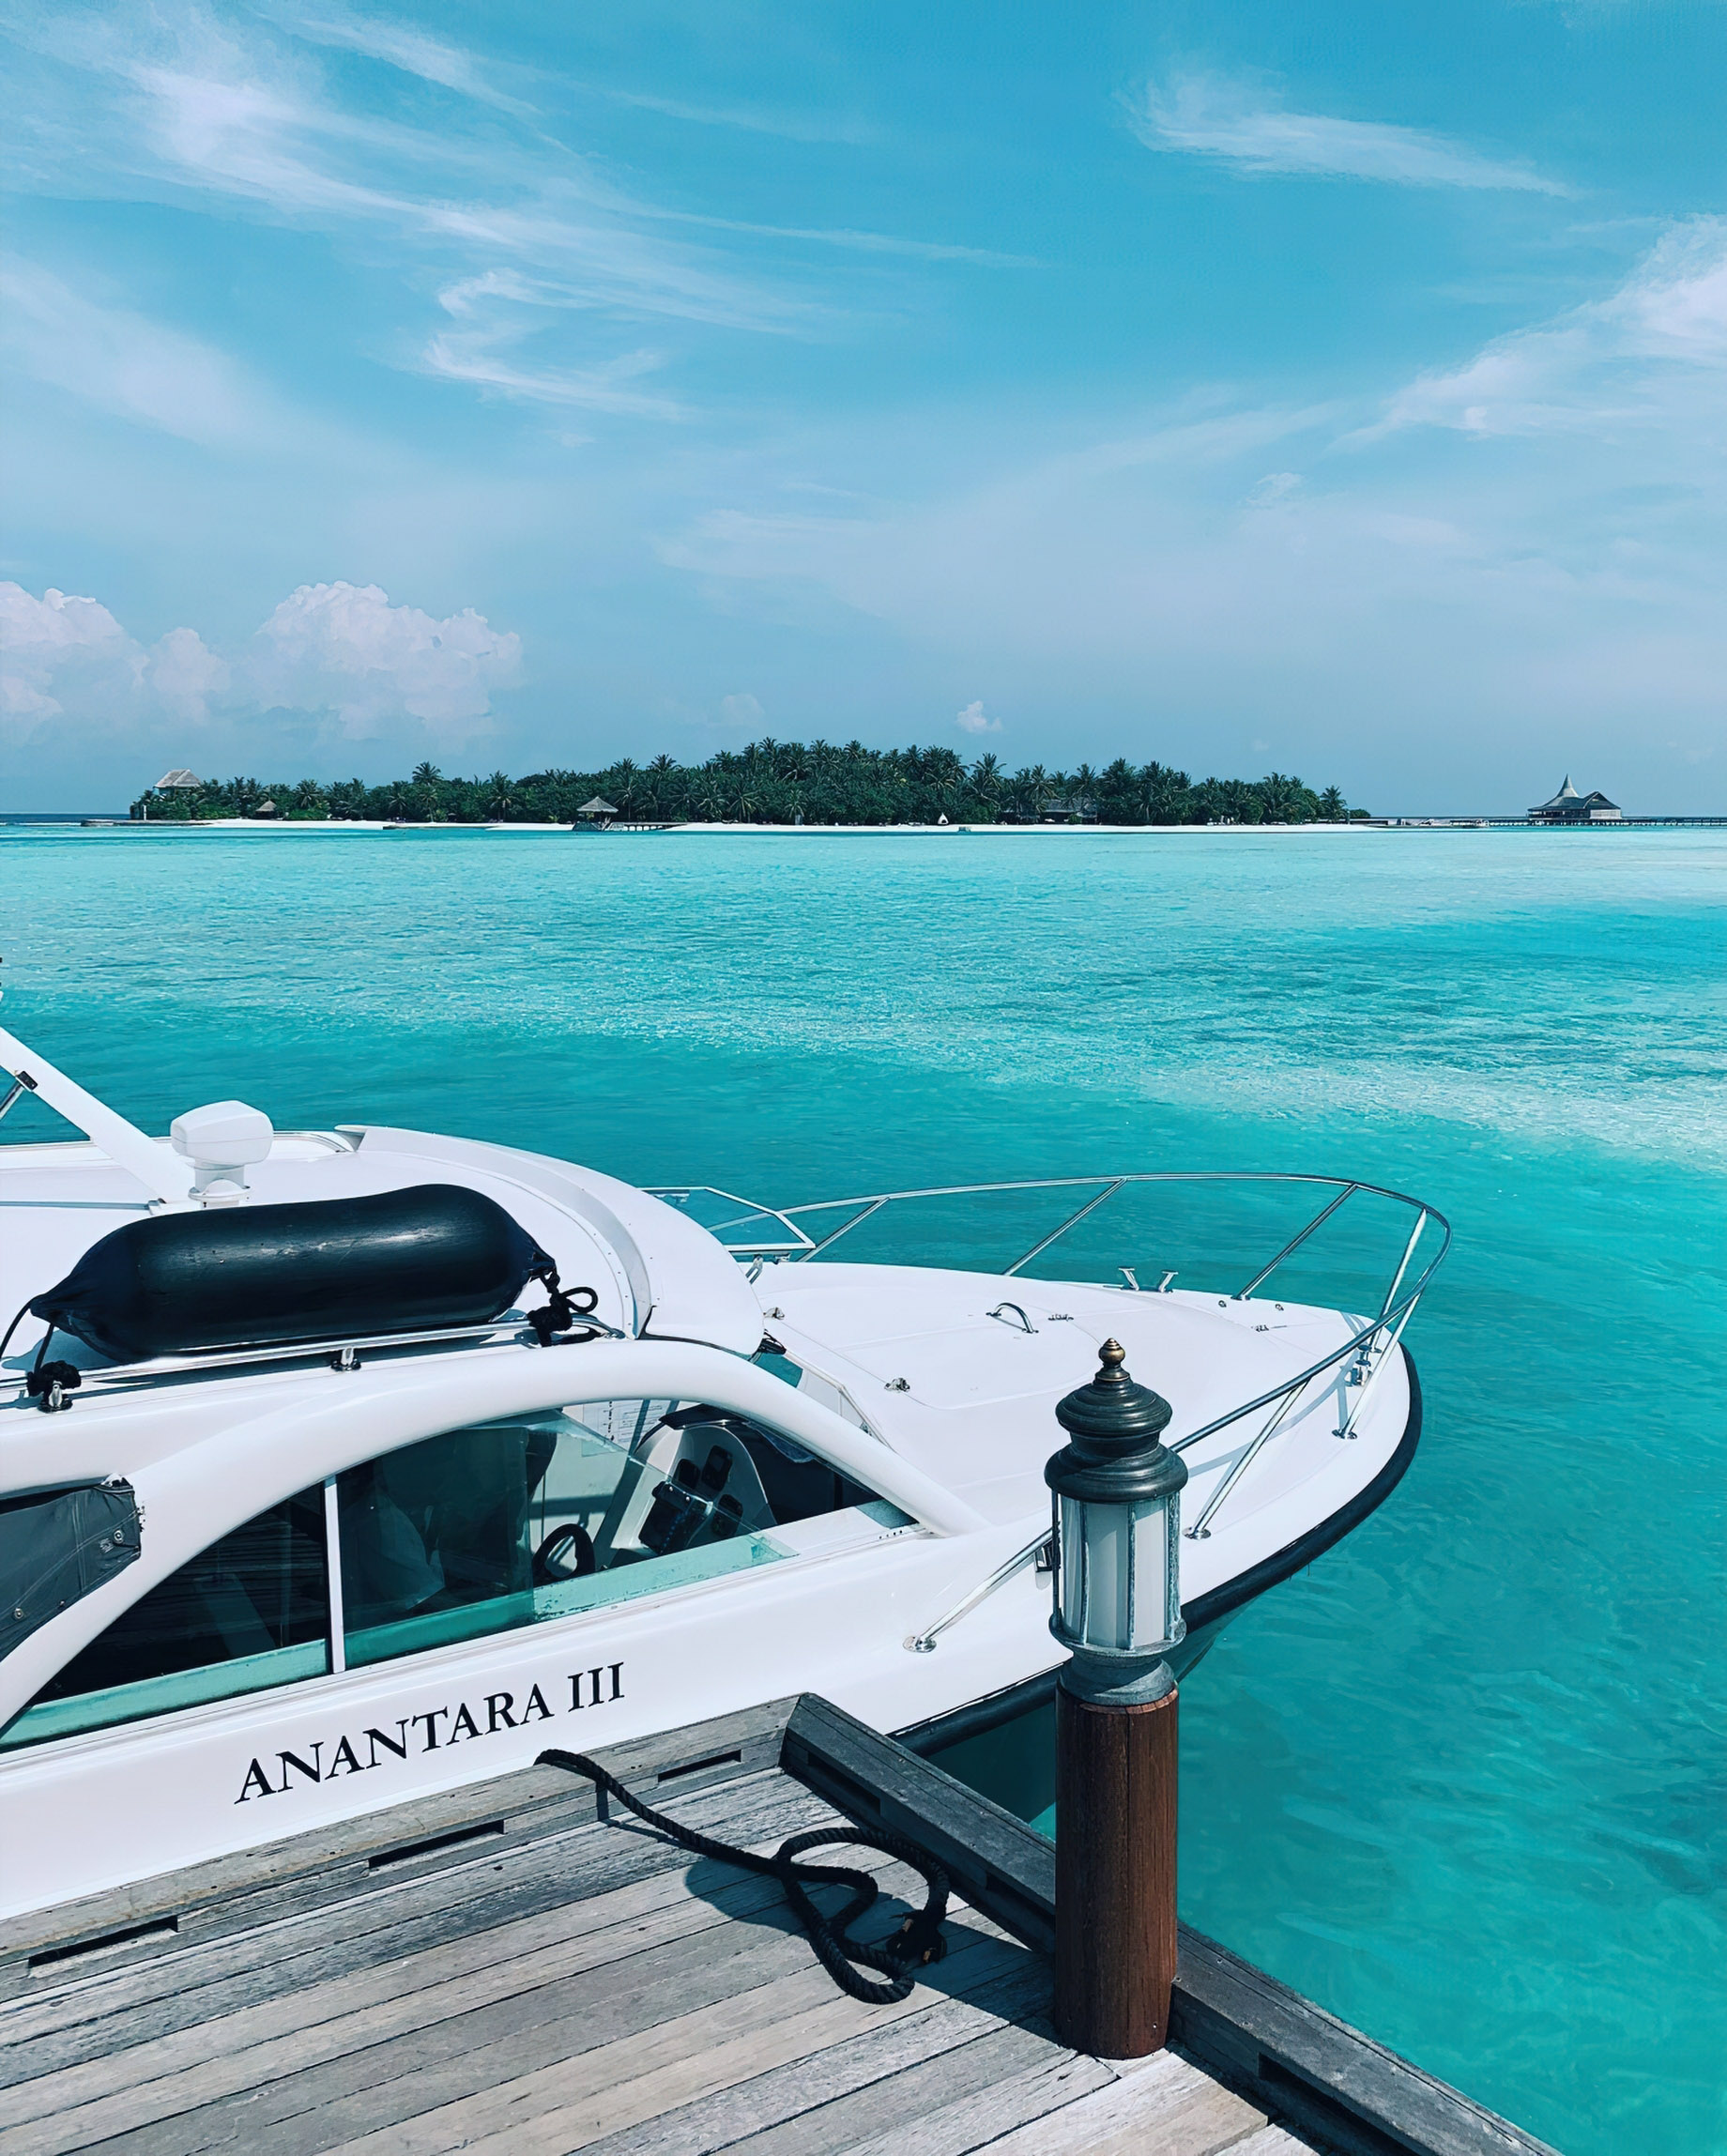 Anantara Thigu Maldives Resort – South Male Atoll, Maldives – Boat Arrival